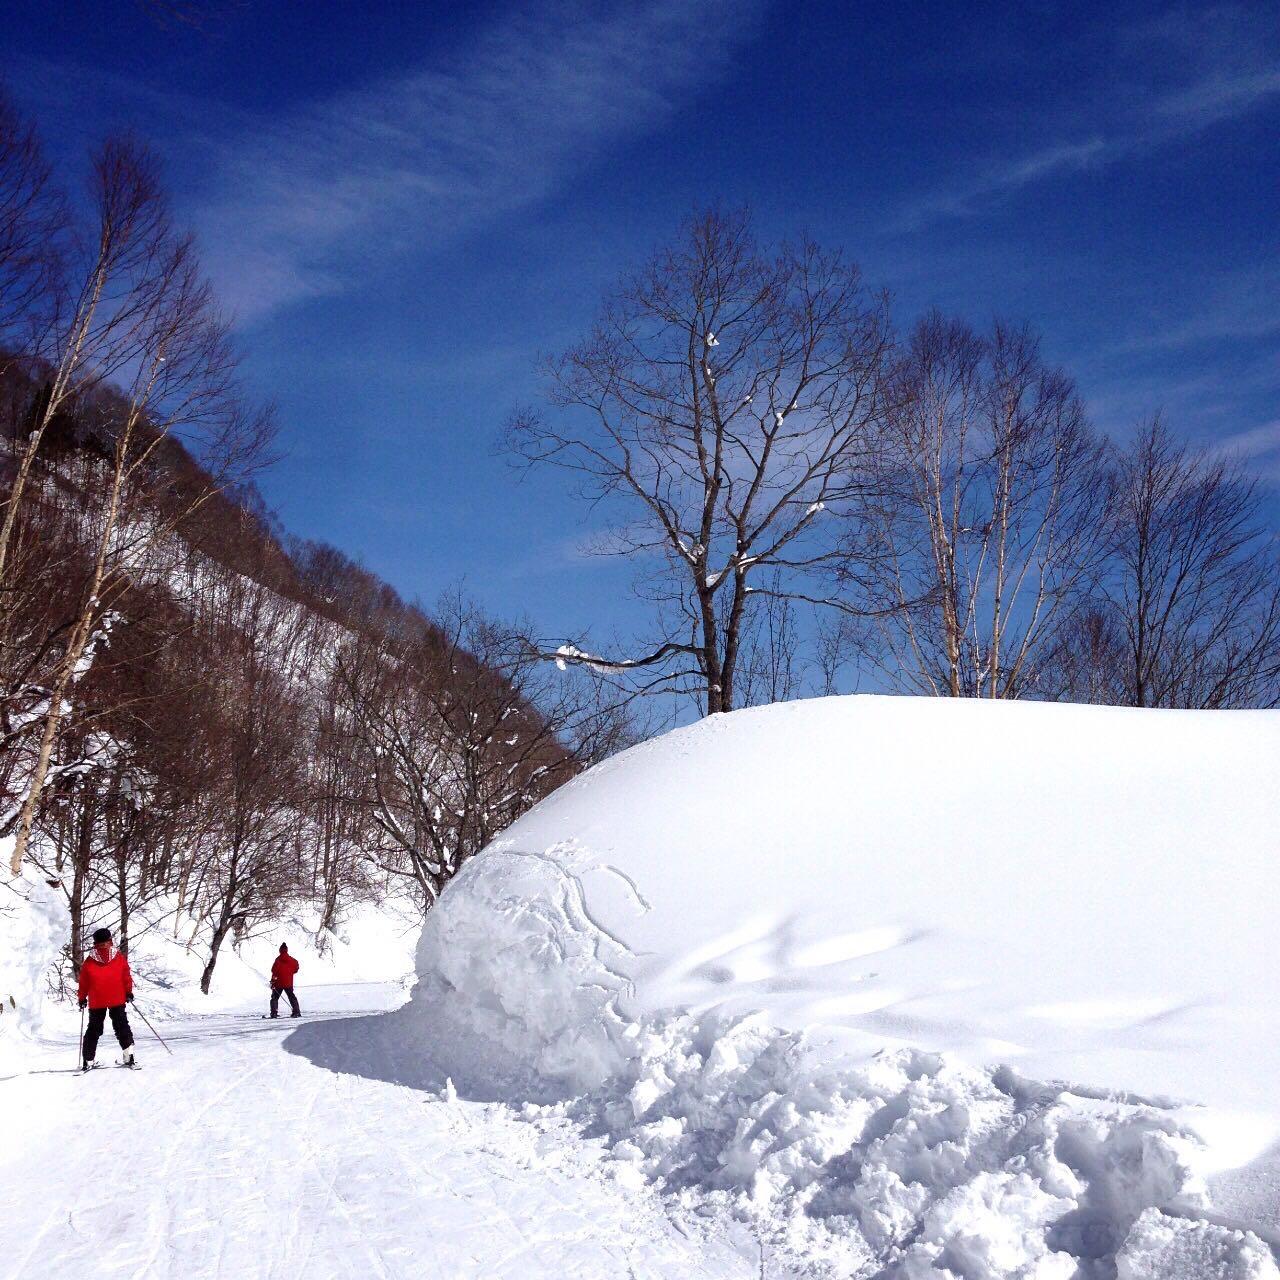 相比中国的滑雪场,日本的滑雪场怎么样?值得一